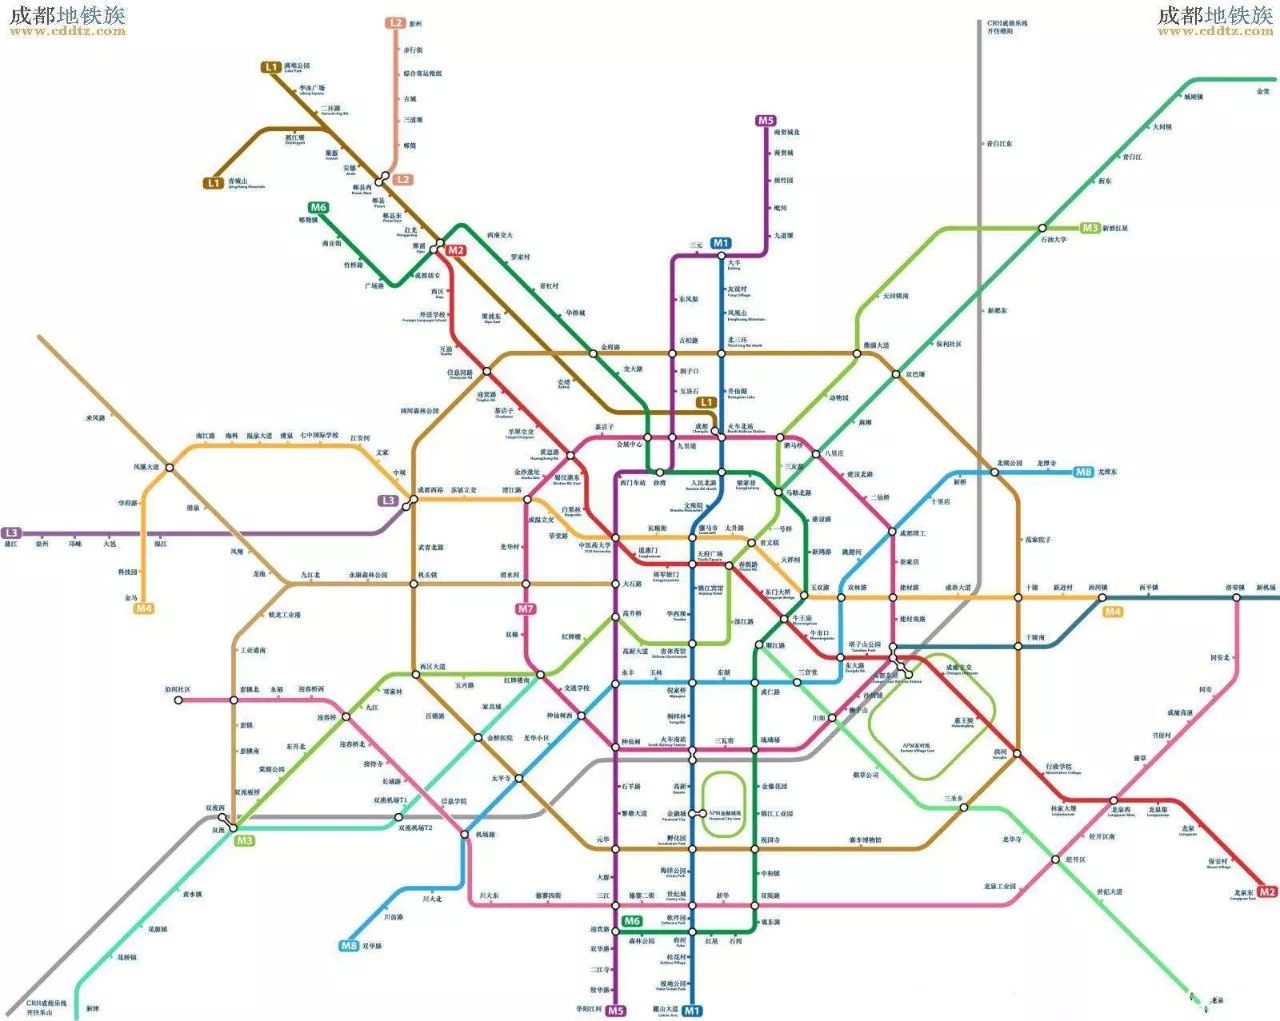 根据成都地铁建设规划目标,至2020年,将完成线网建设500+公里,开工